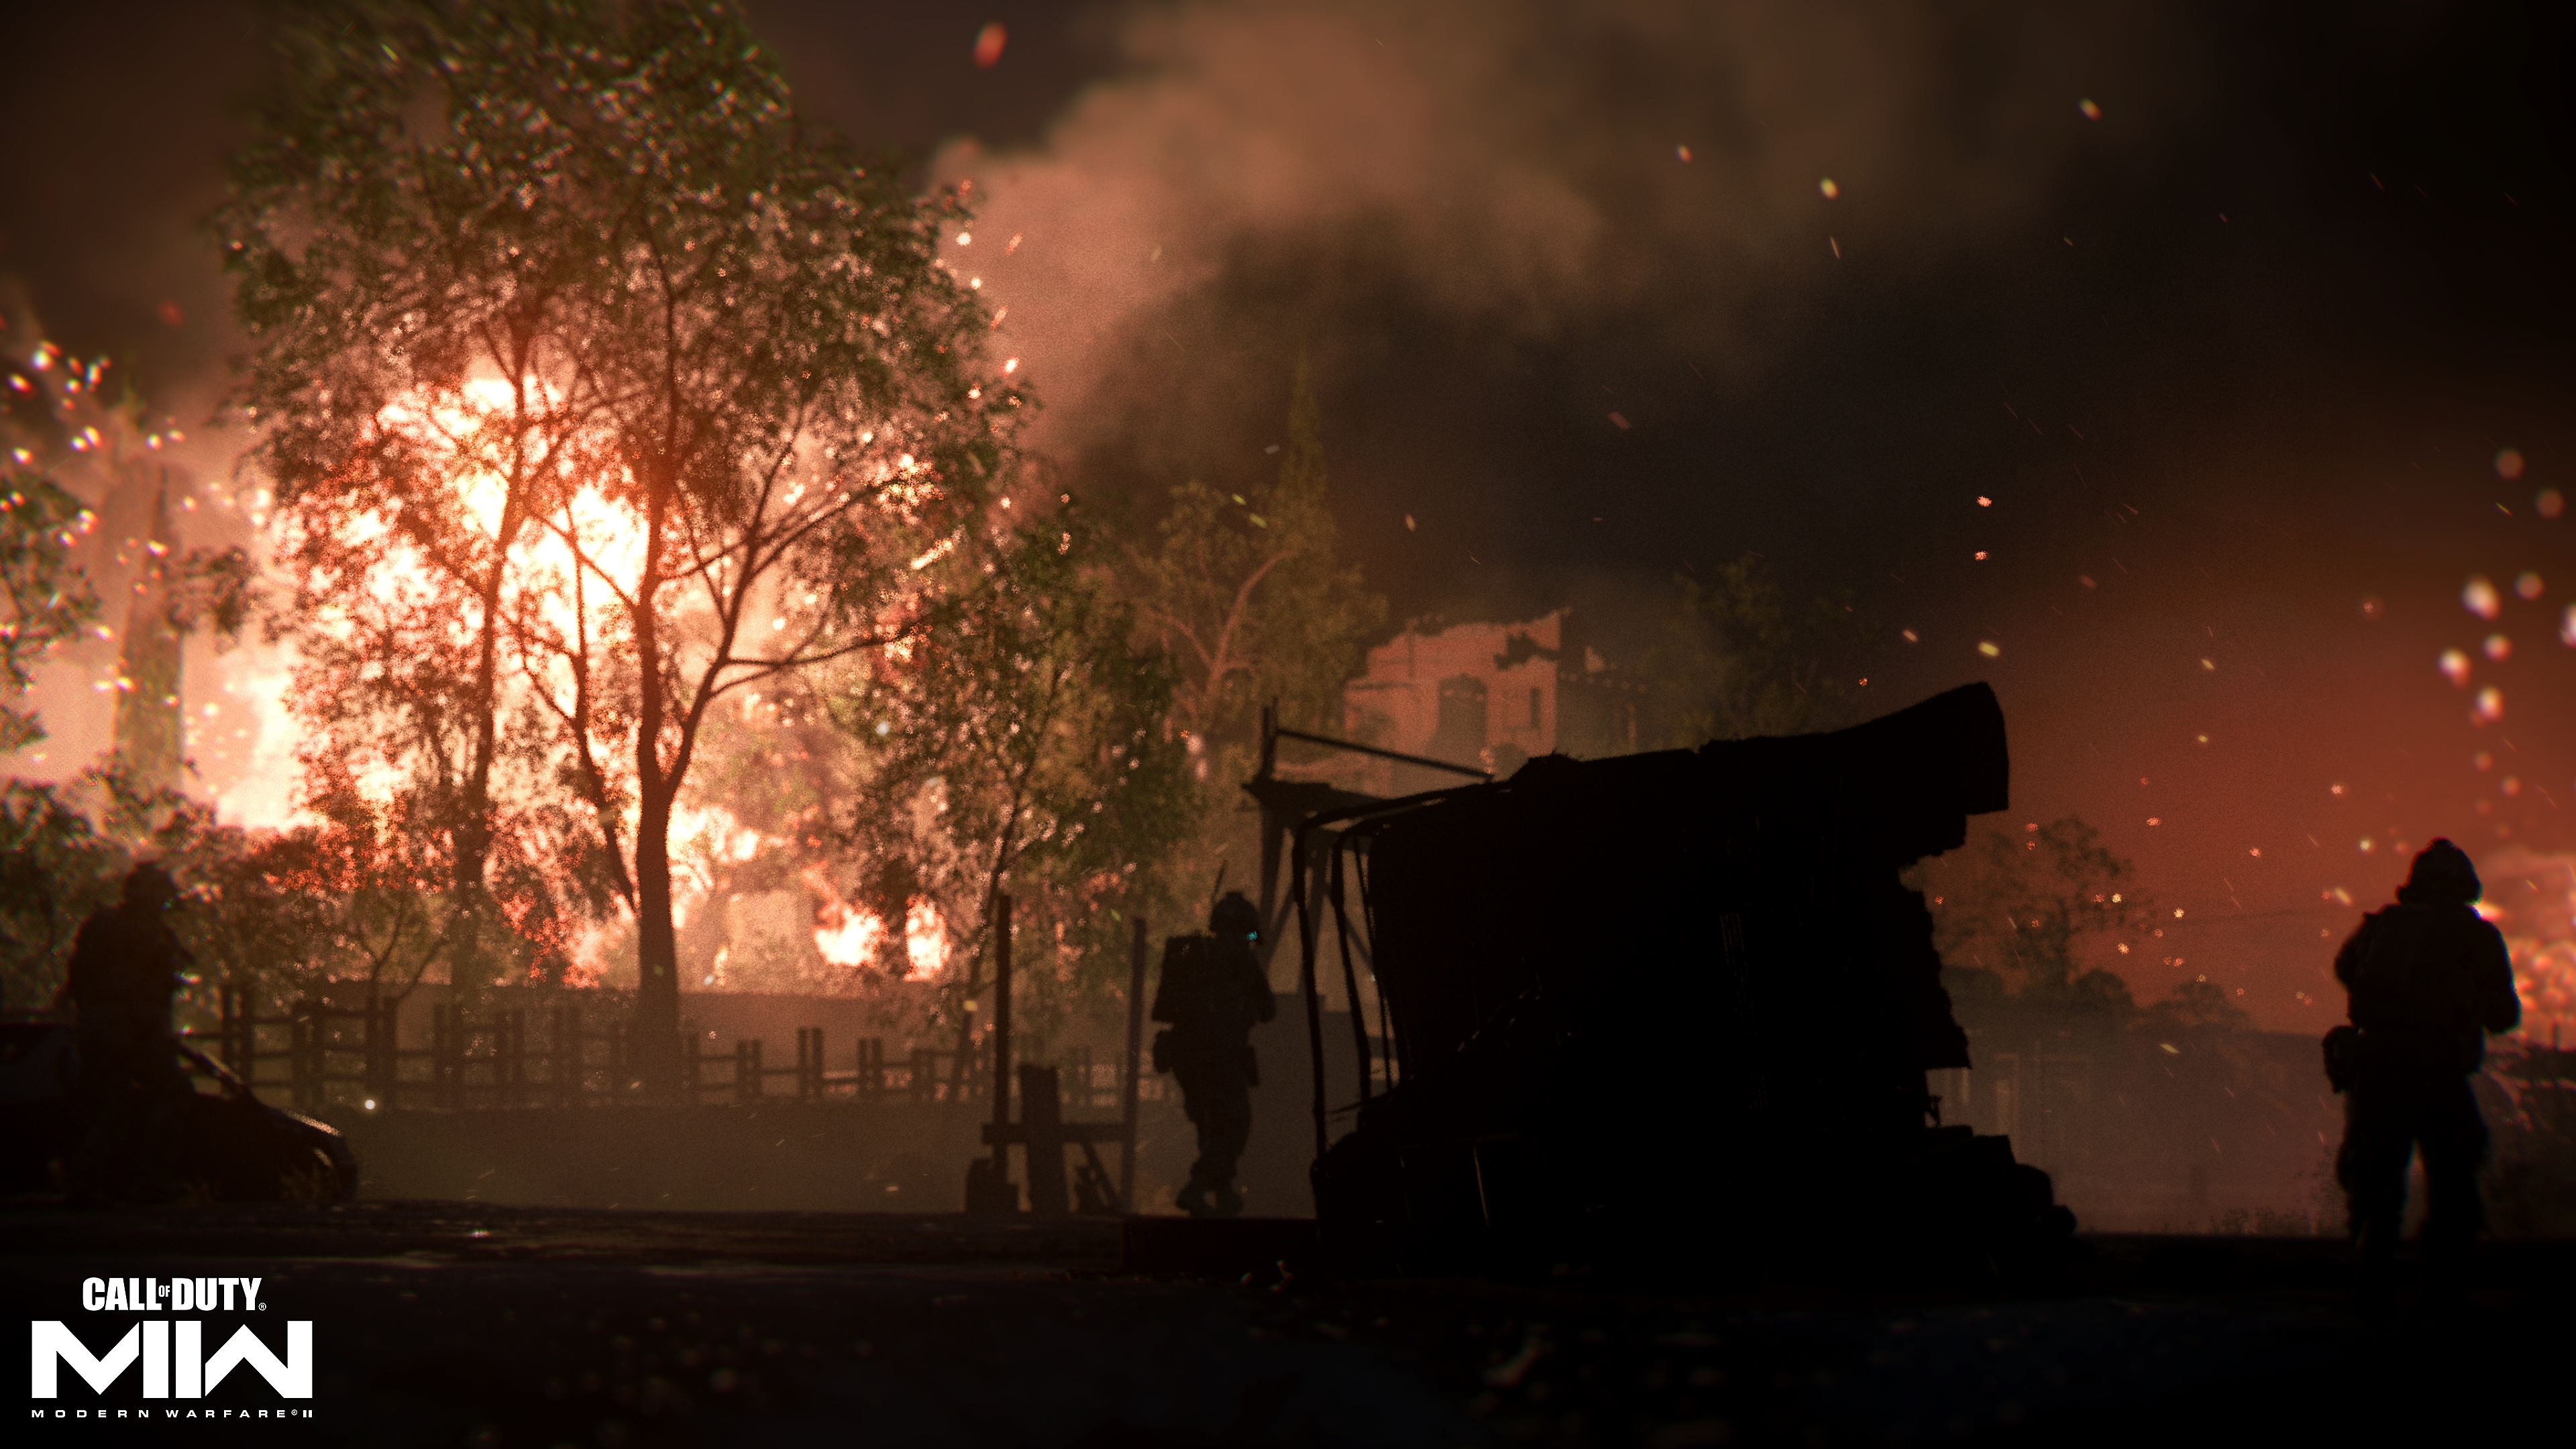 Call of Duty: Modern Warfare 2 2022 – kuvakaappaus tulesta kaukaisuudessa puun takana